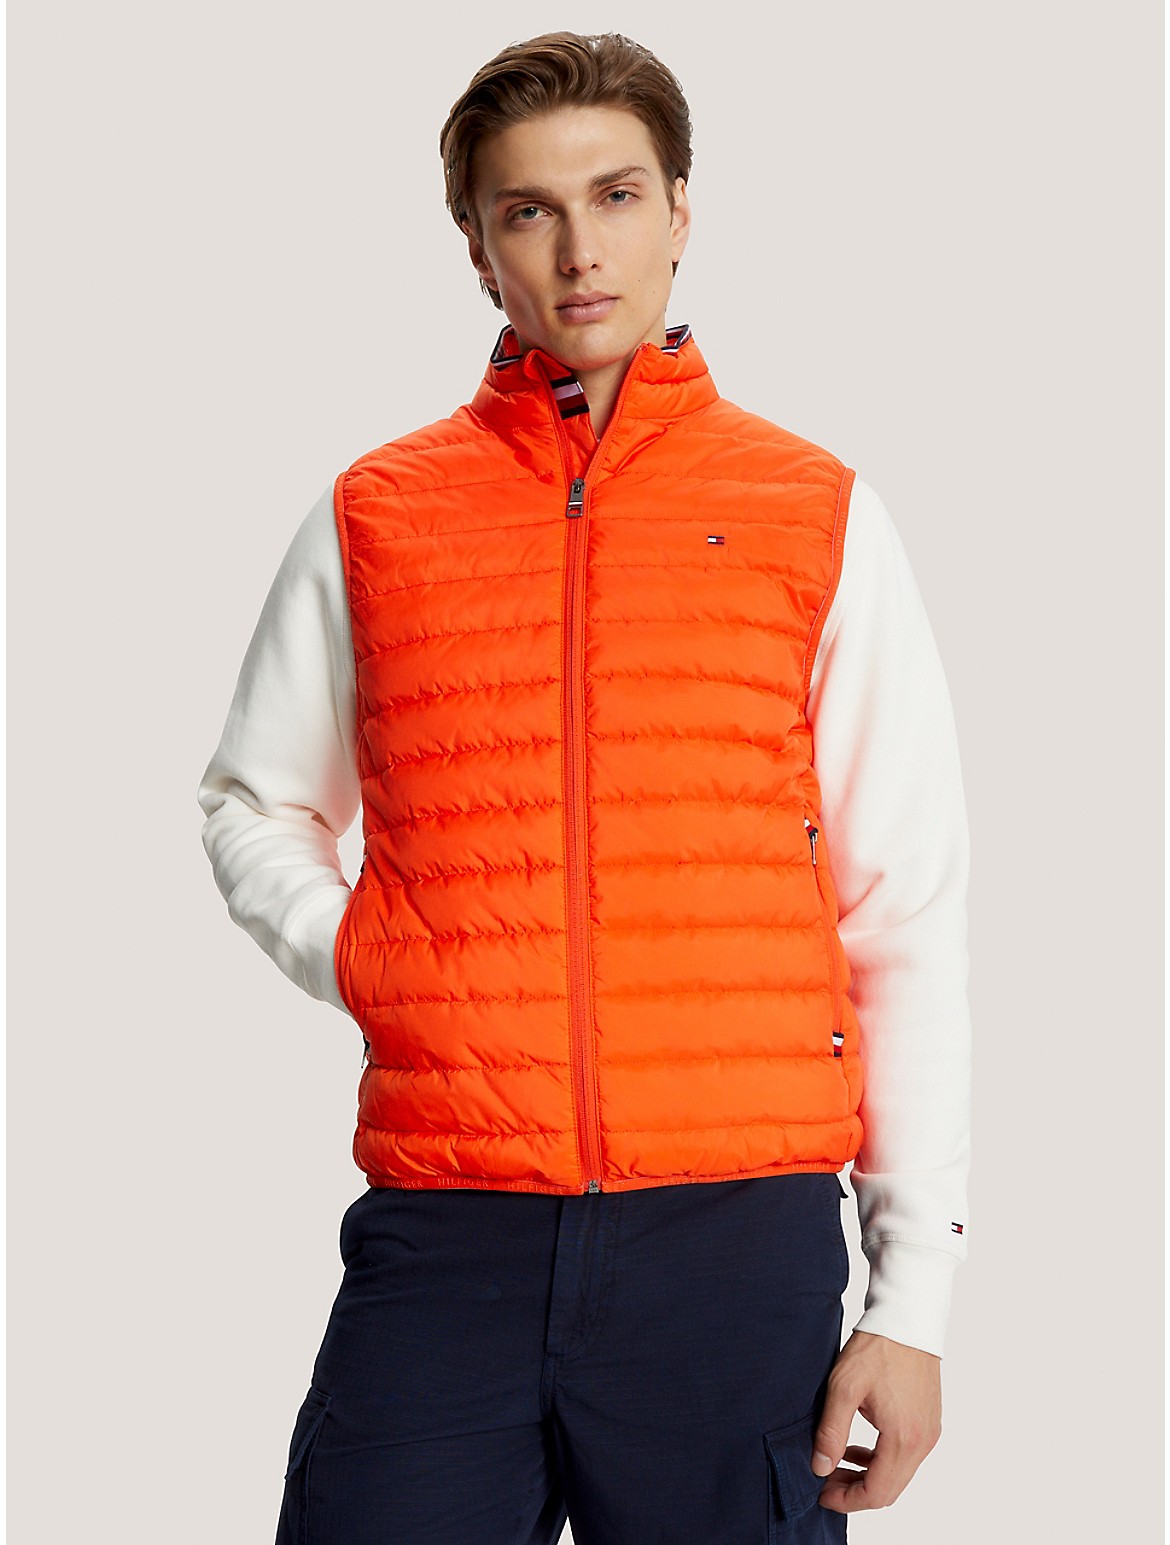 Tommy Hilfiger Men's Recycled Packable Vest - Orange - L